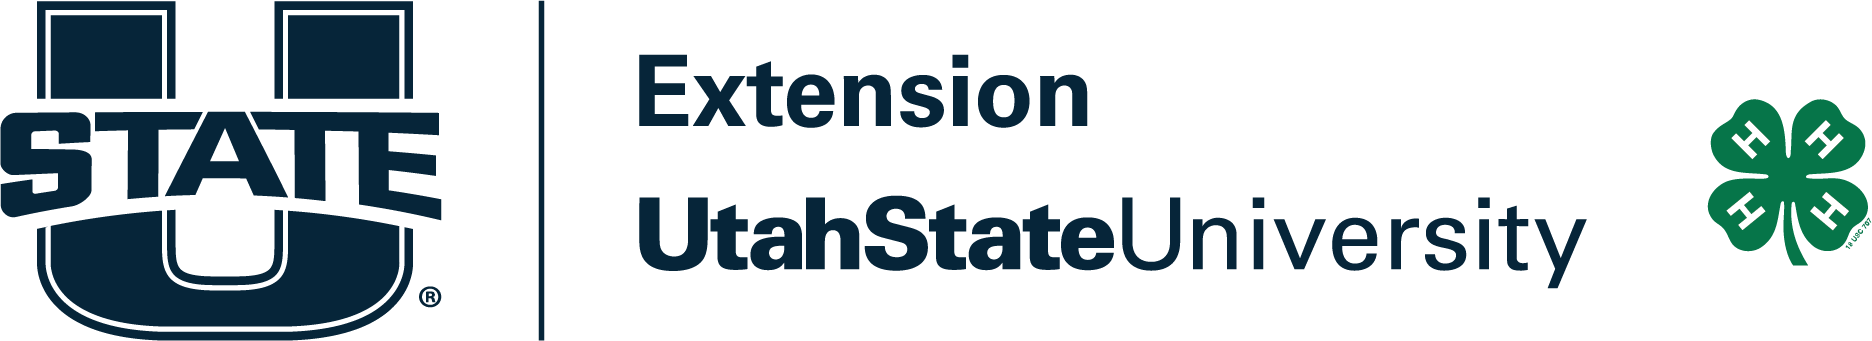 utah state extension logo